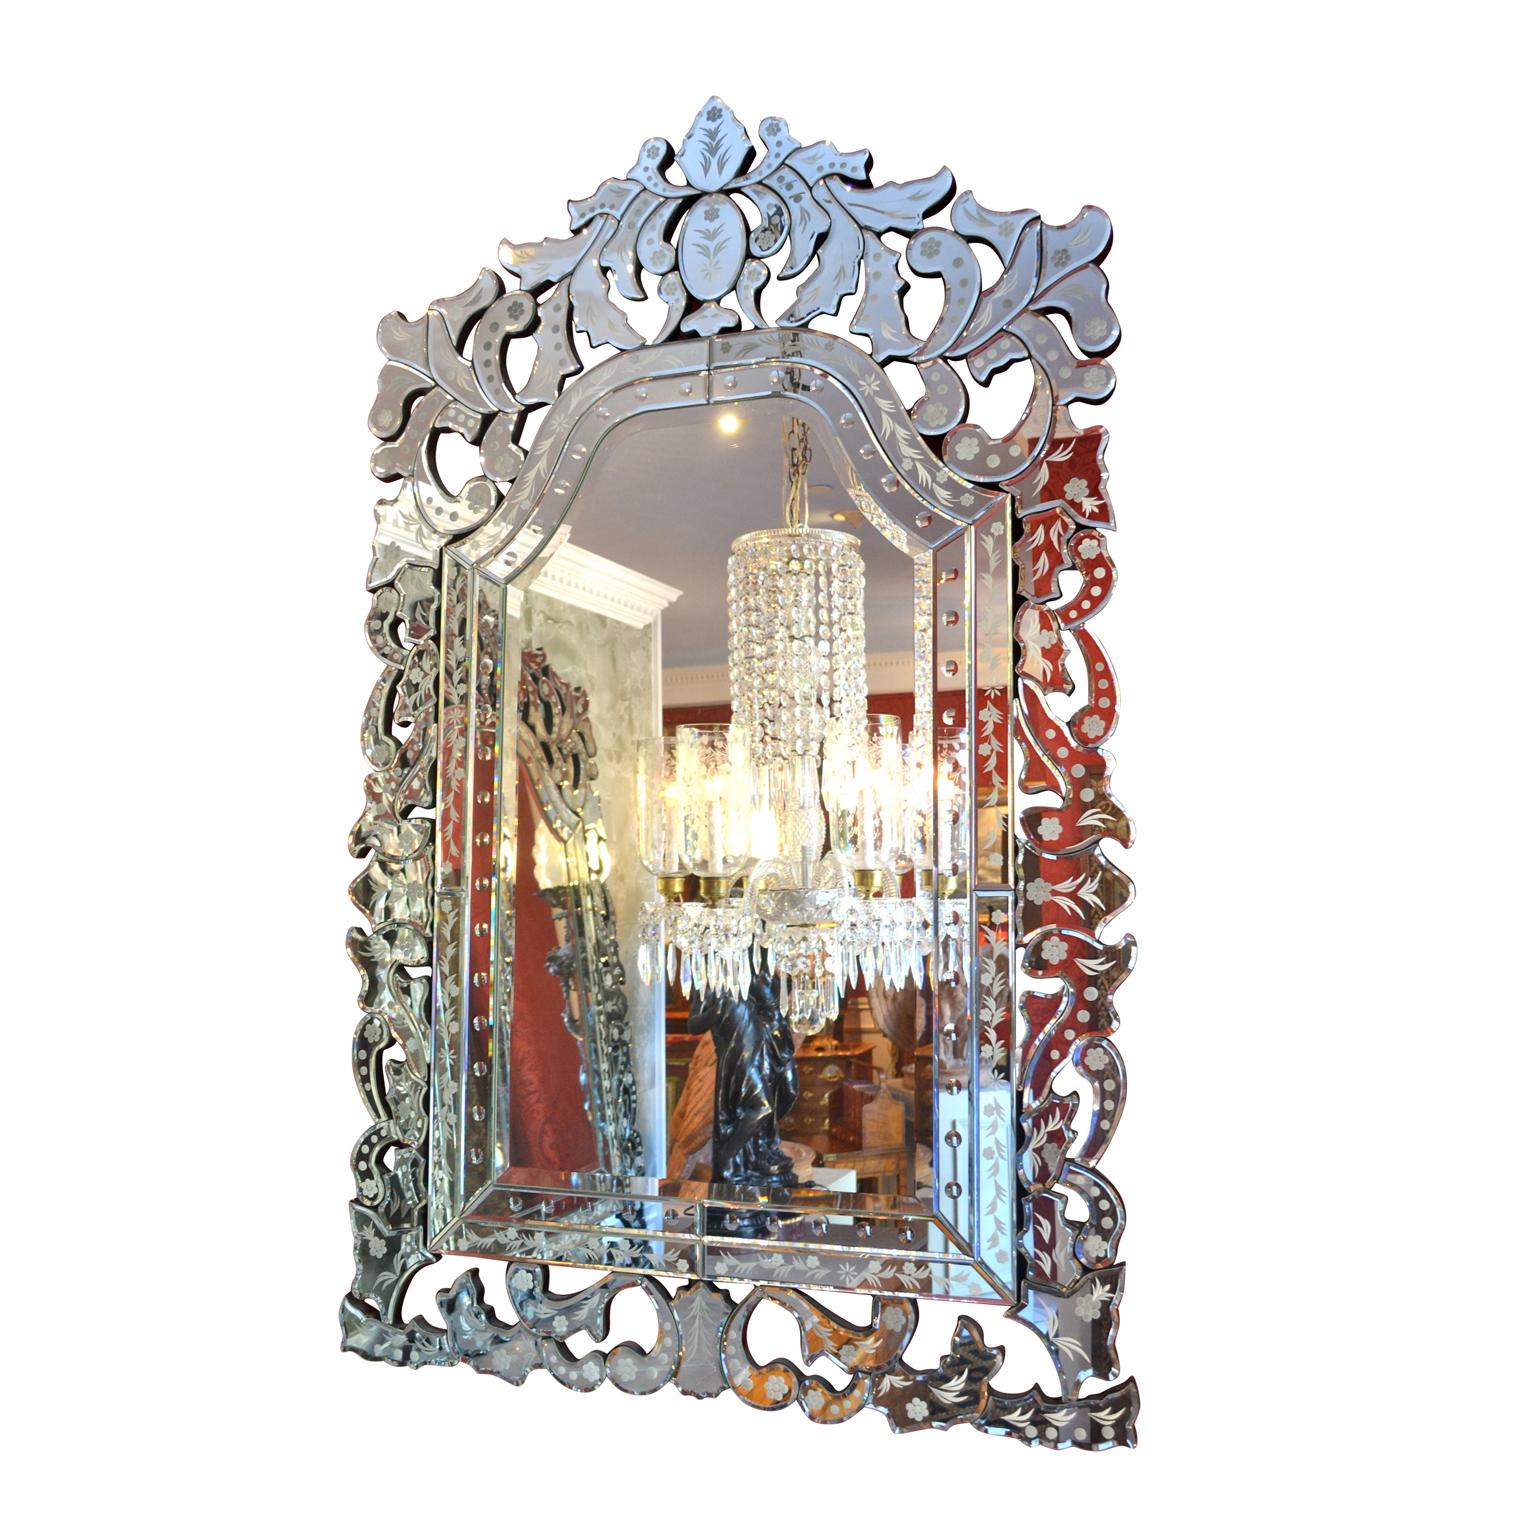 Ein dekoratives Paar zeitgenössischer venezianischer Spiegel mit abgeschrägter Glasfläche in fast rechteckiger Form und gewölbter Oberseite.